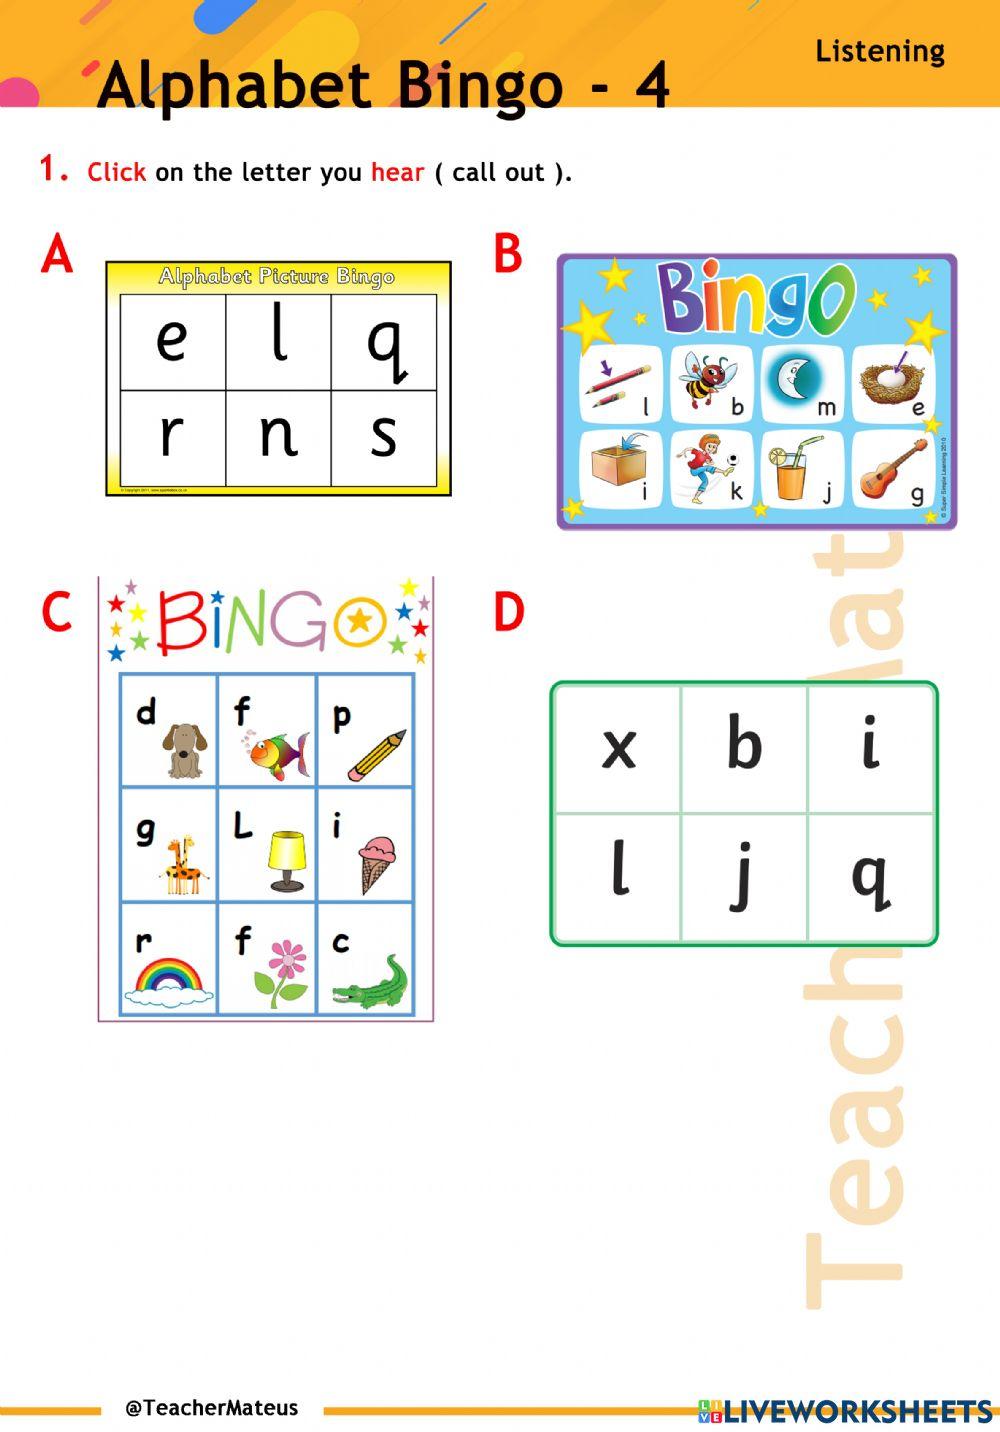 Alphabet Bingo - 4